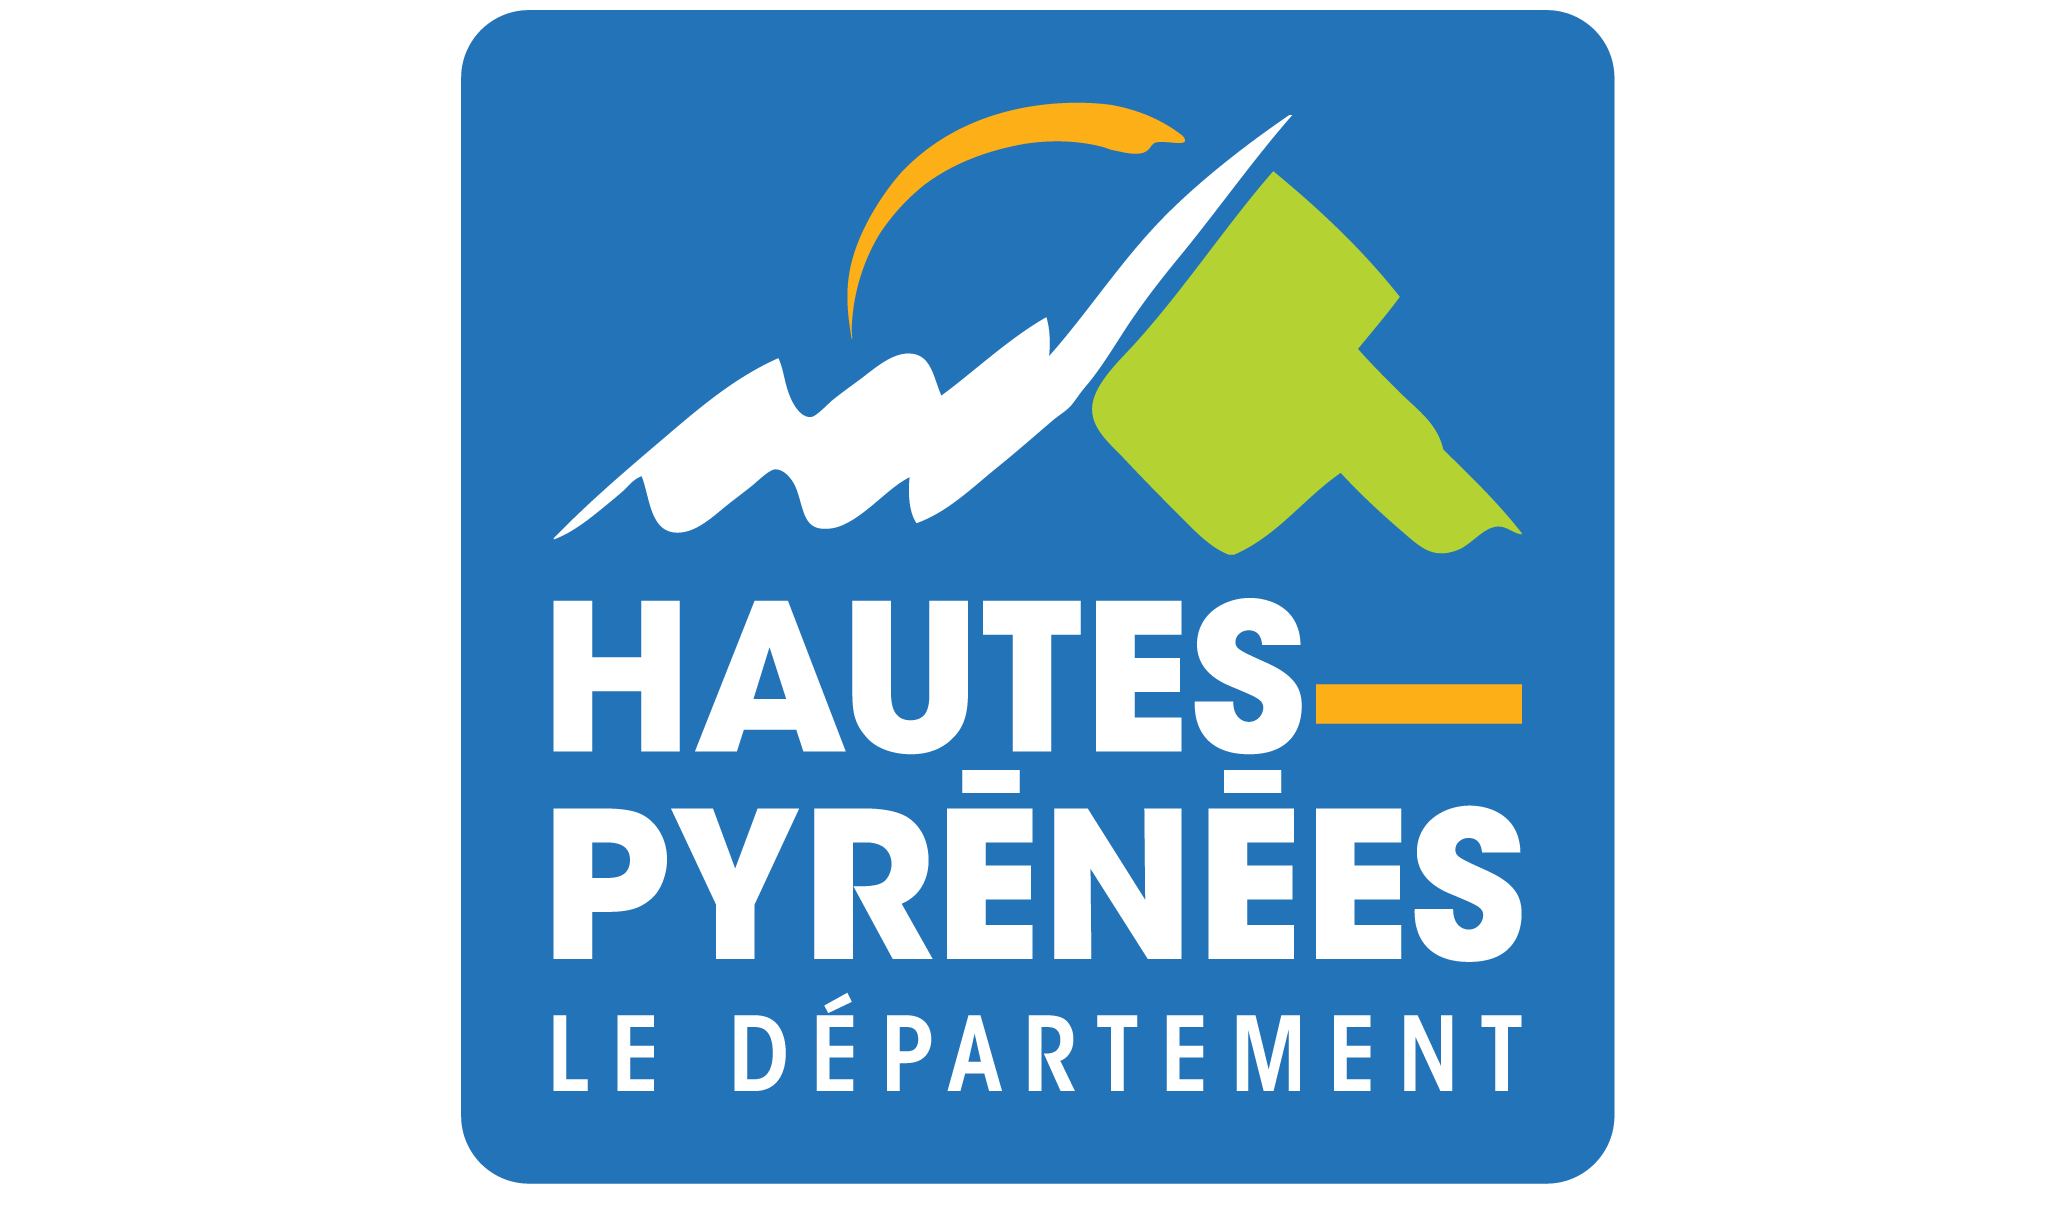 Hautes-Pyrenees Le Department